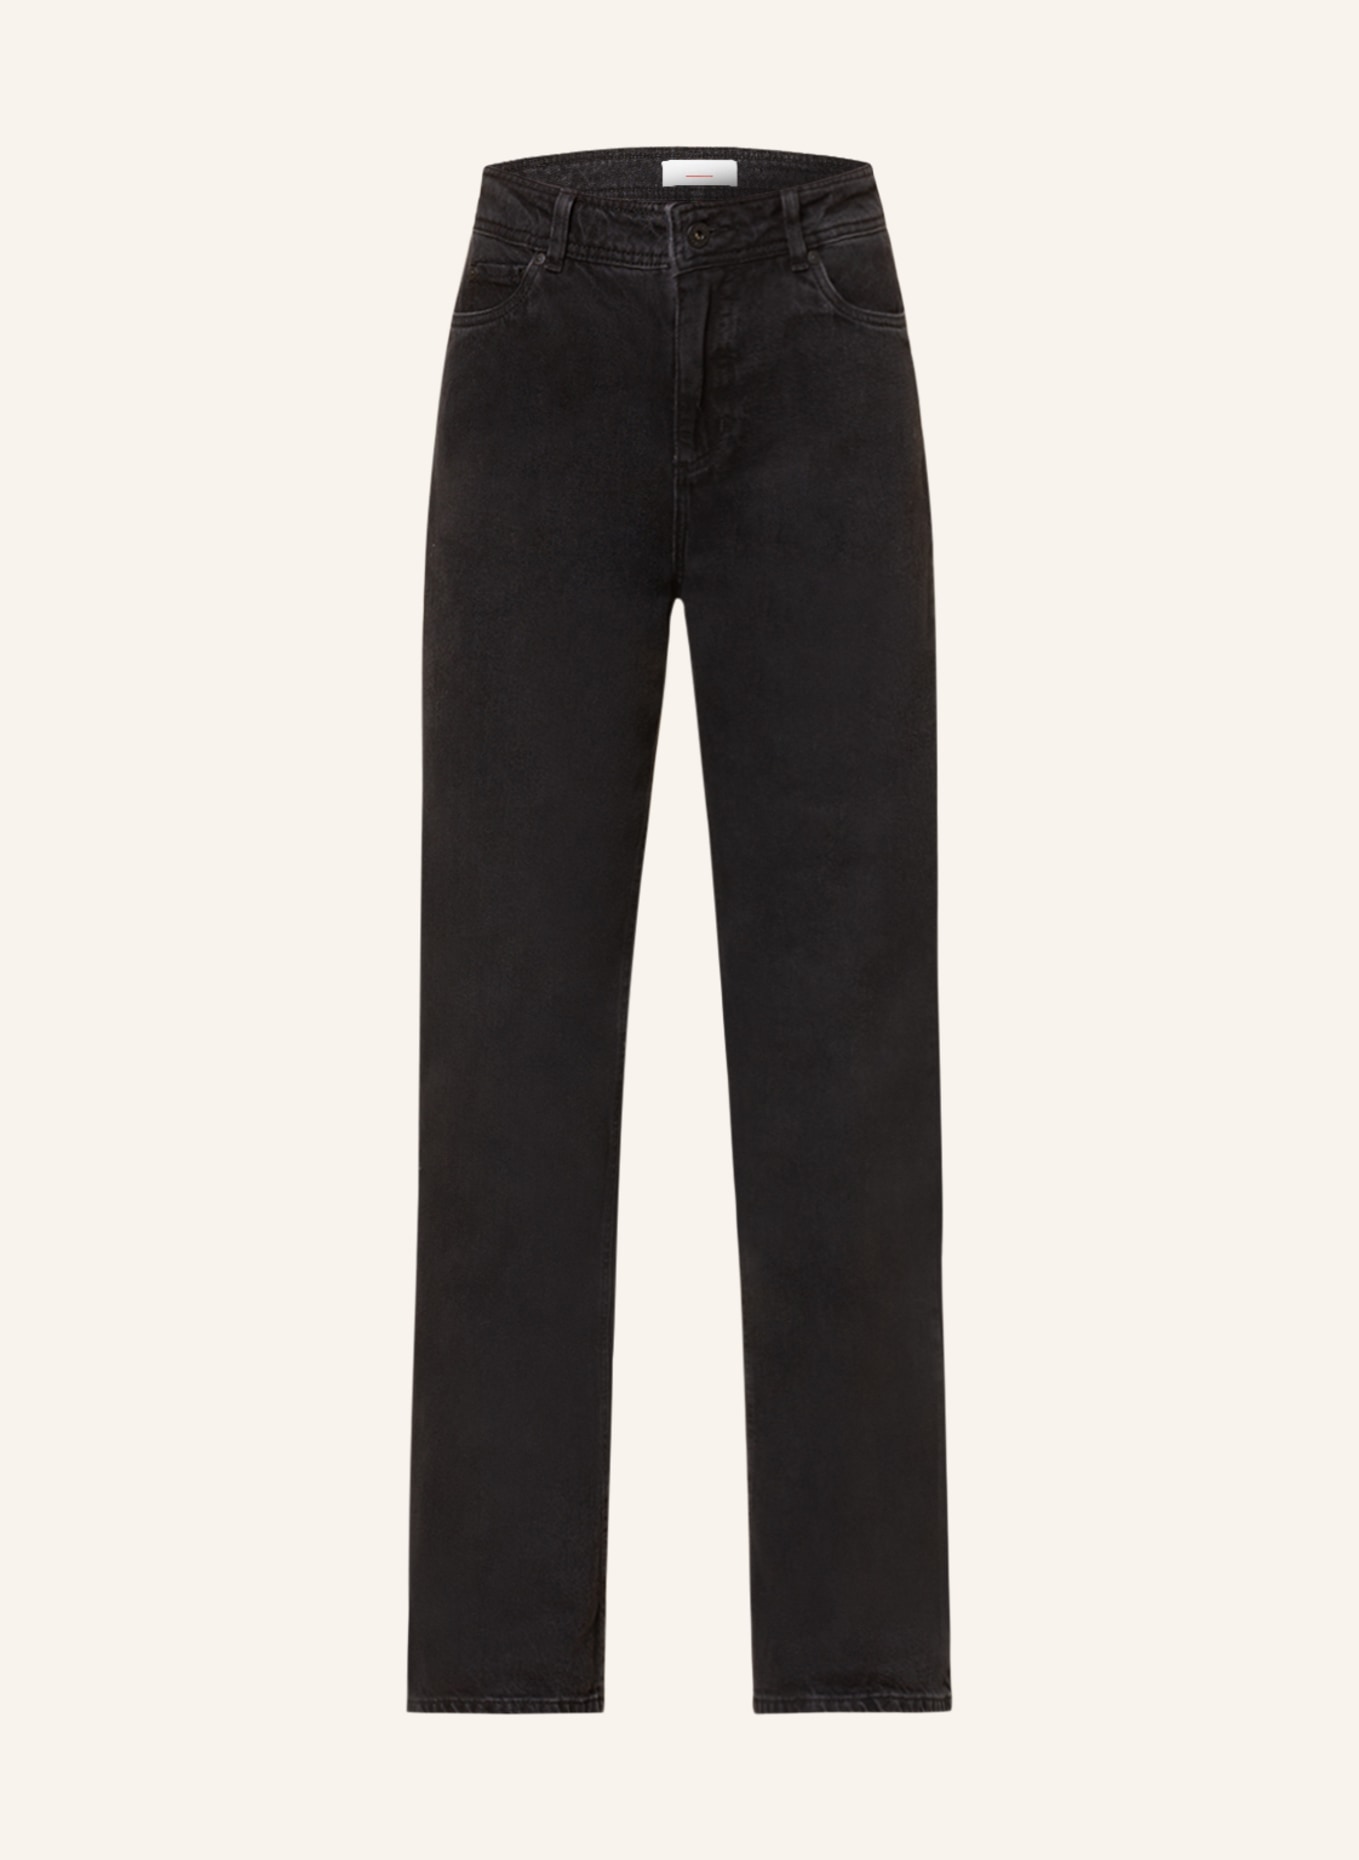 CINQUE Jeans-Culotte CISAIL, Farbe: 98 ANTHRAZIT (Bild 1)